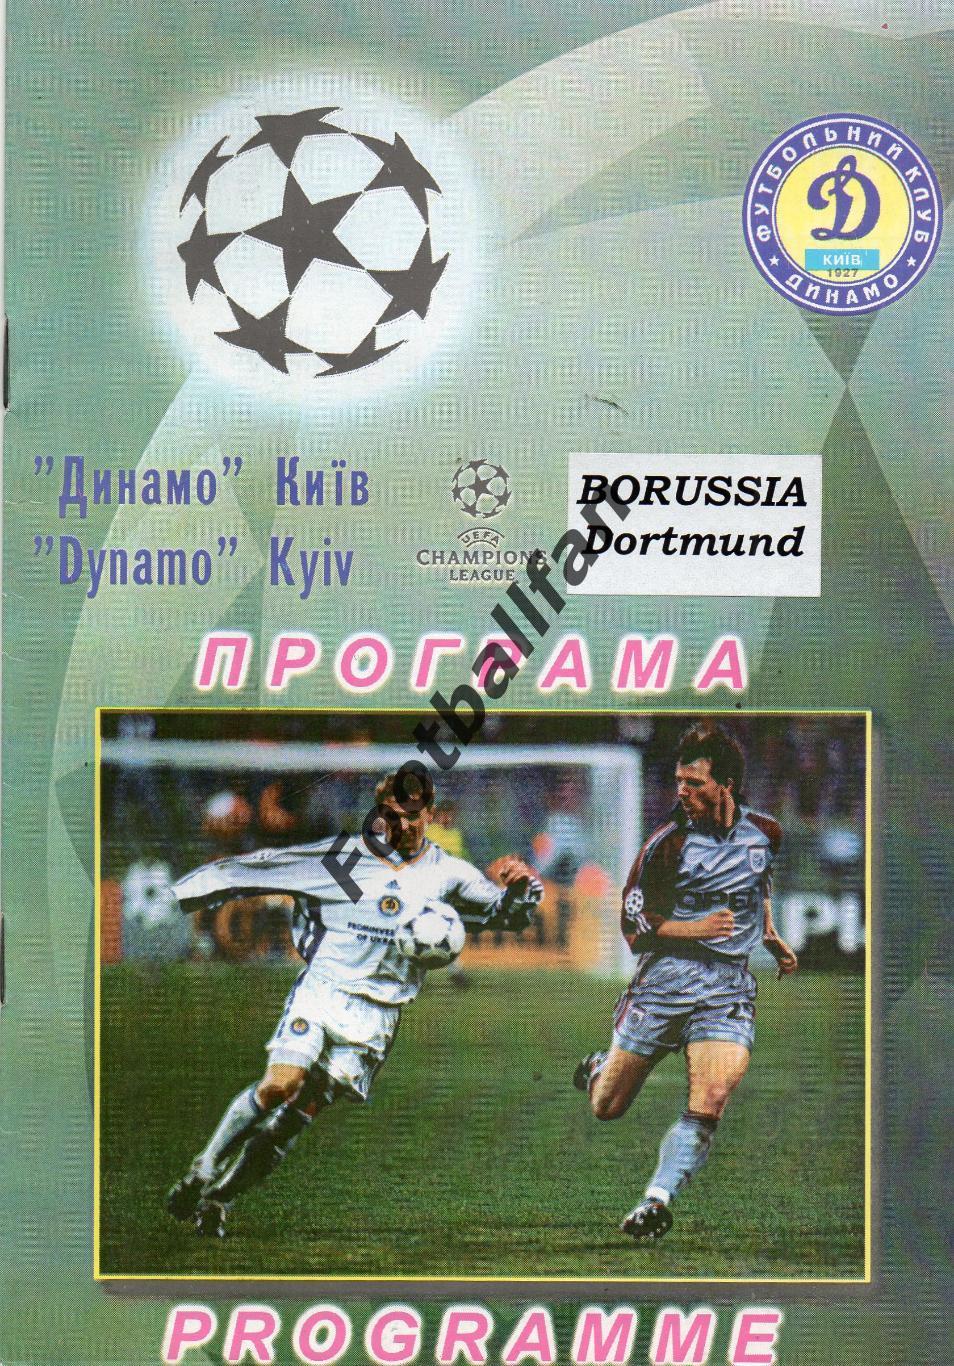 Динамо Киев , Украина - Боруссия Дортмунд , Германия 11.09.2001